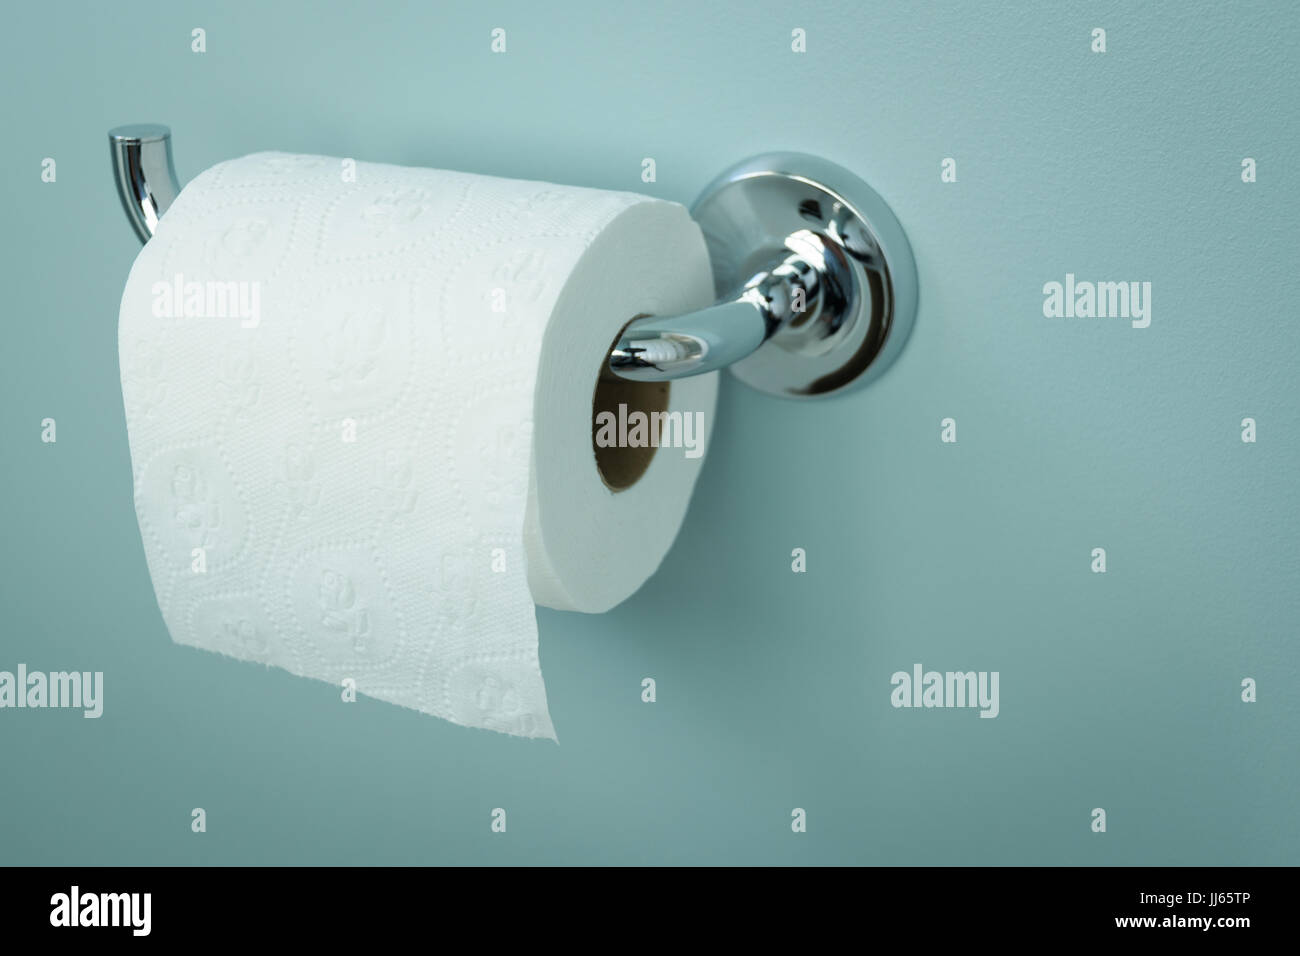 Rouleau de papier toilette blanc accroché sur un support chromé Photo Stock  - Alamy